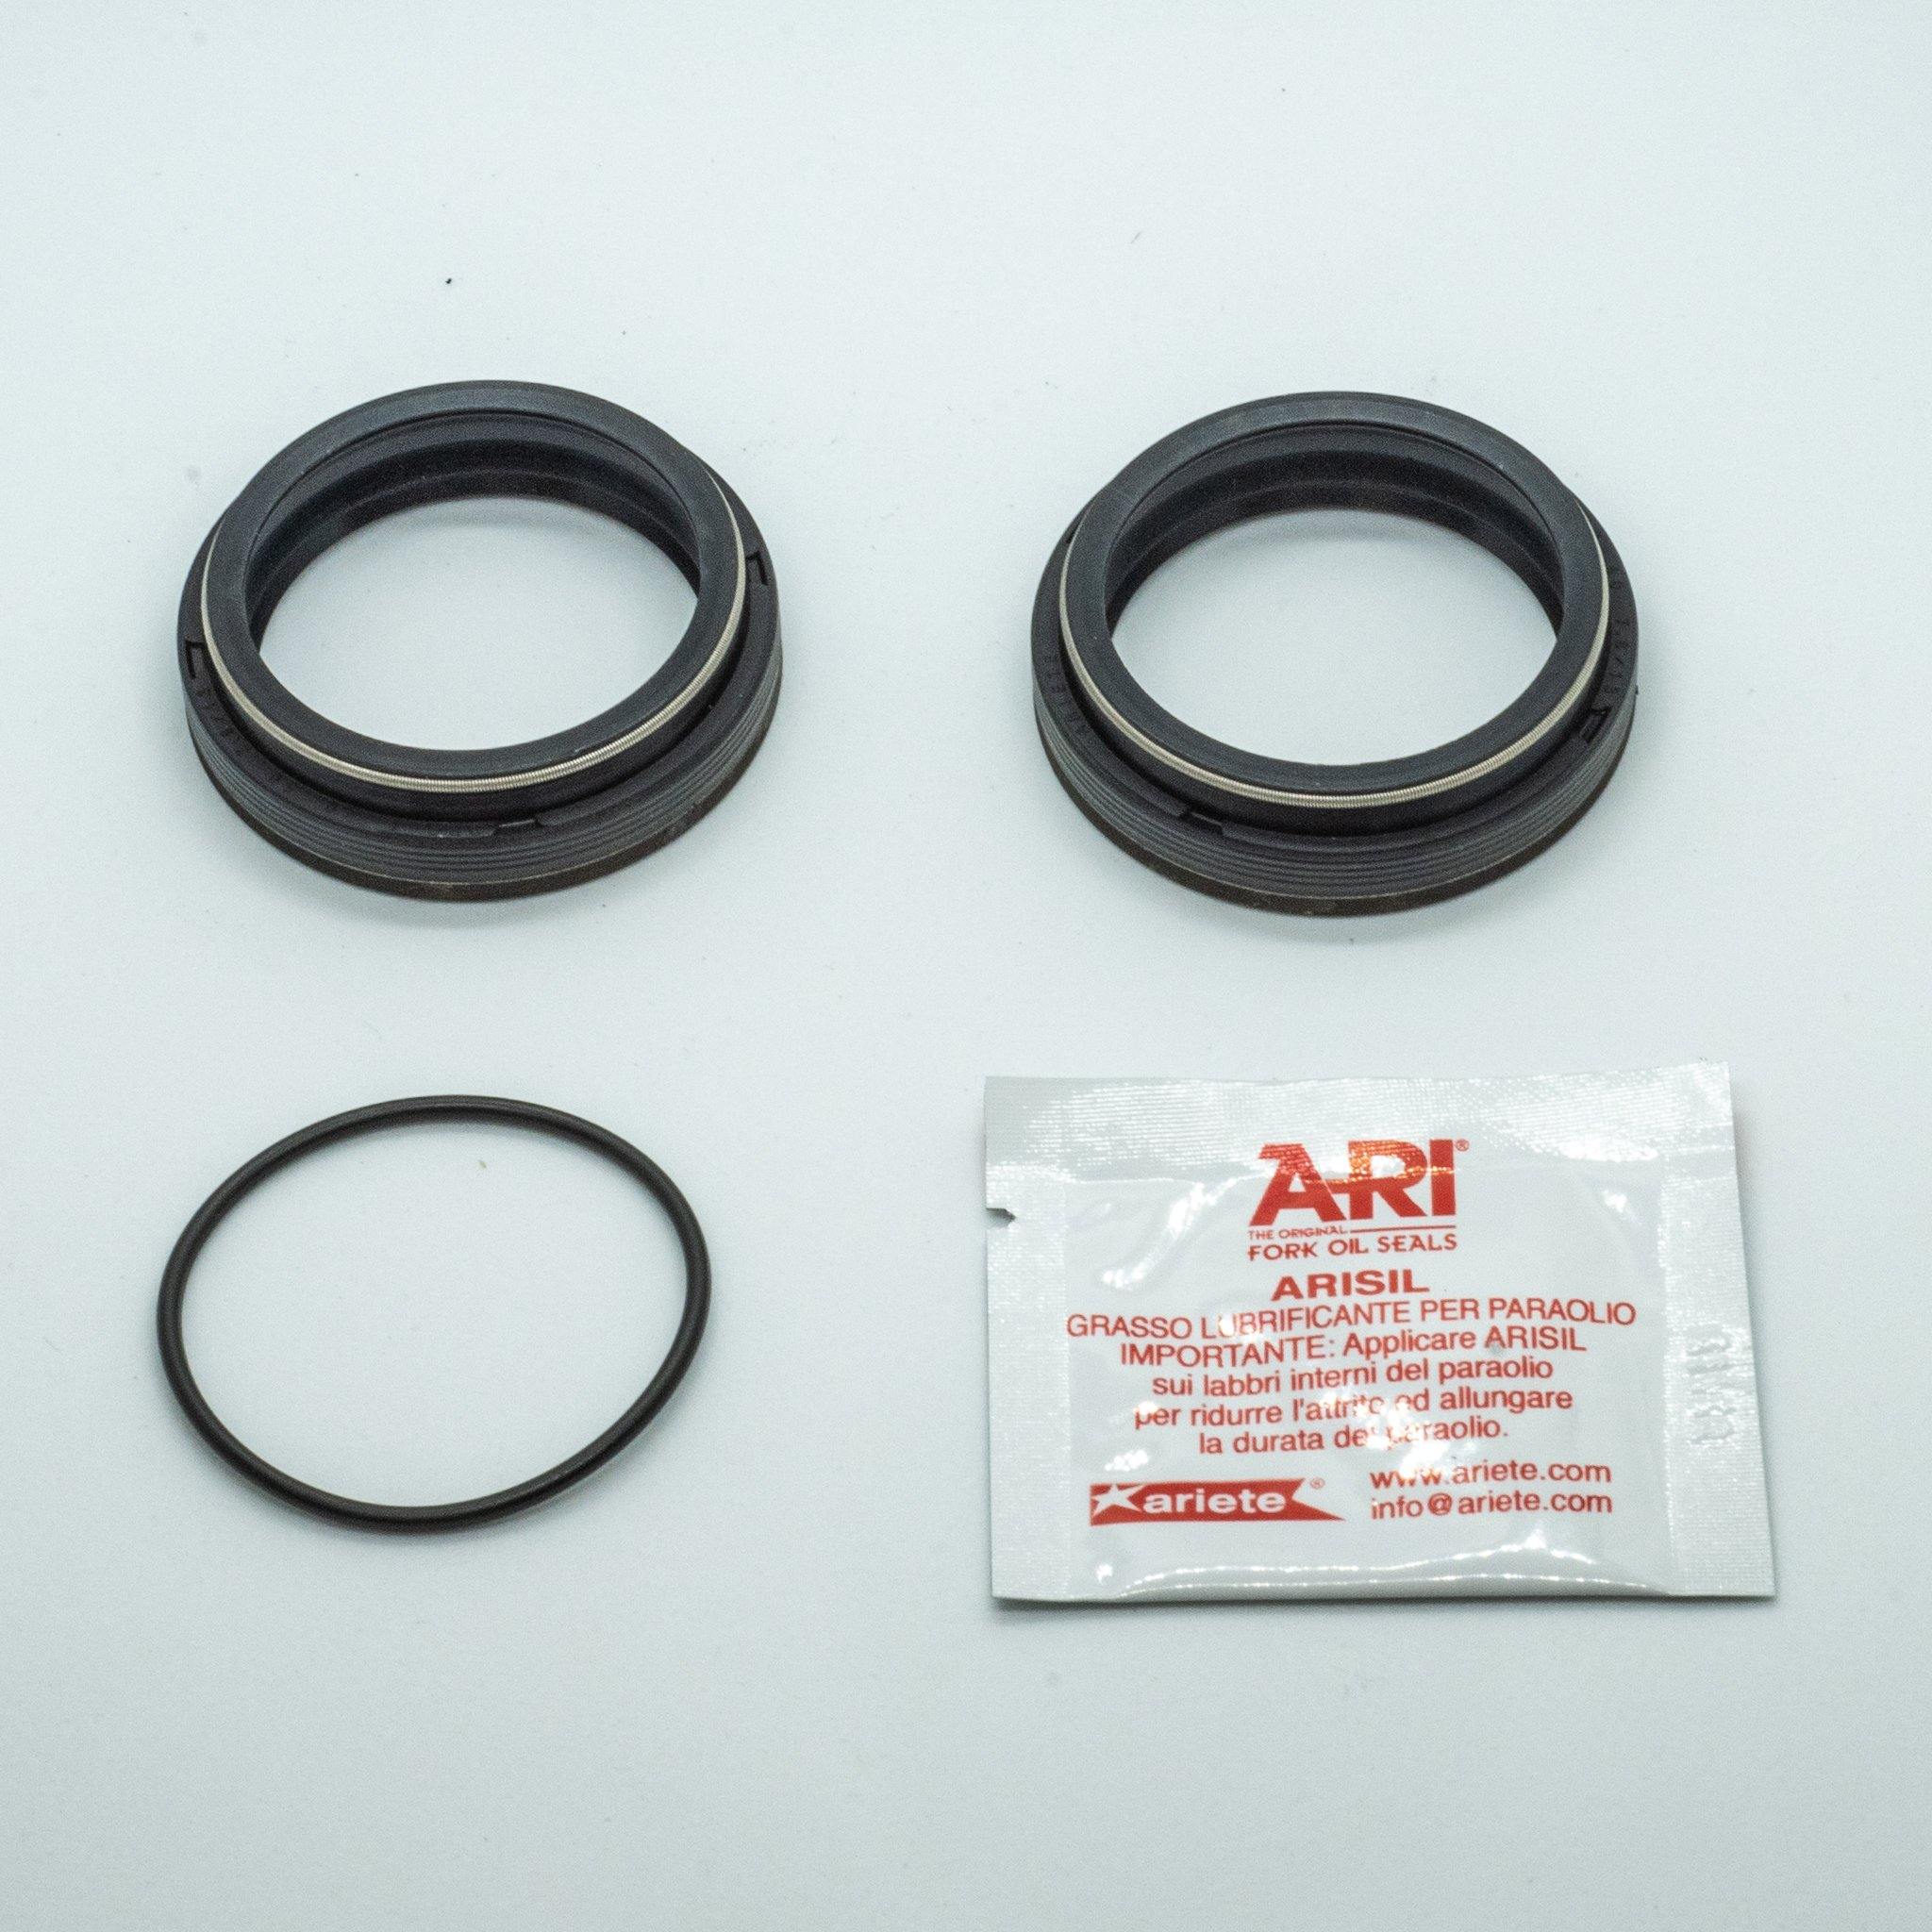 ARI Fork Oil Seals - 36 Diameter - GAMUX